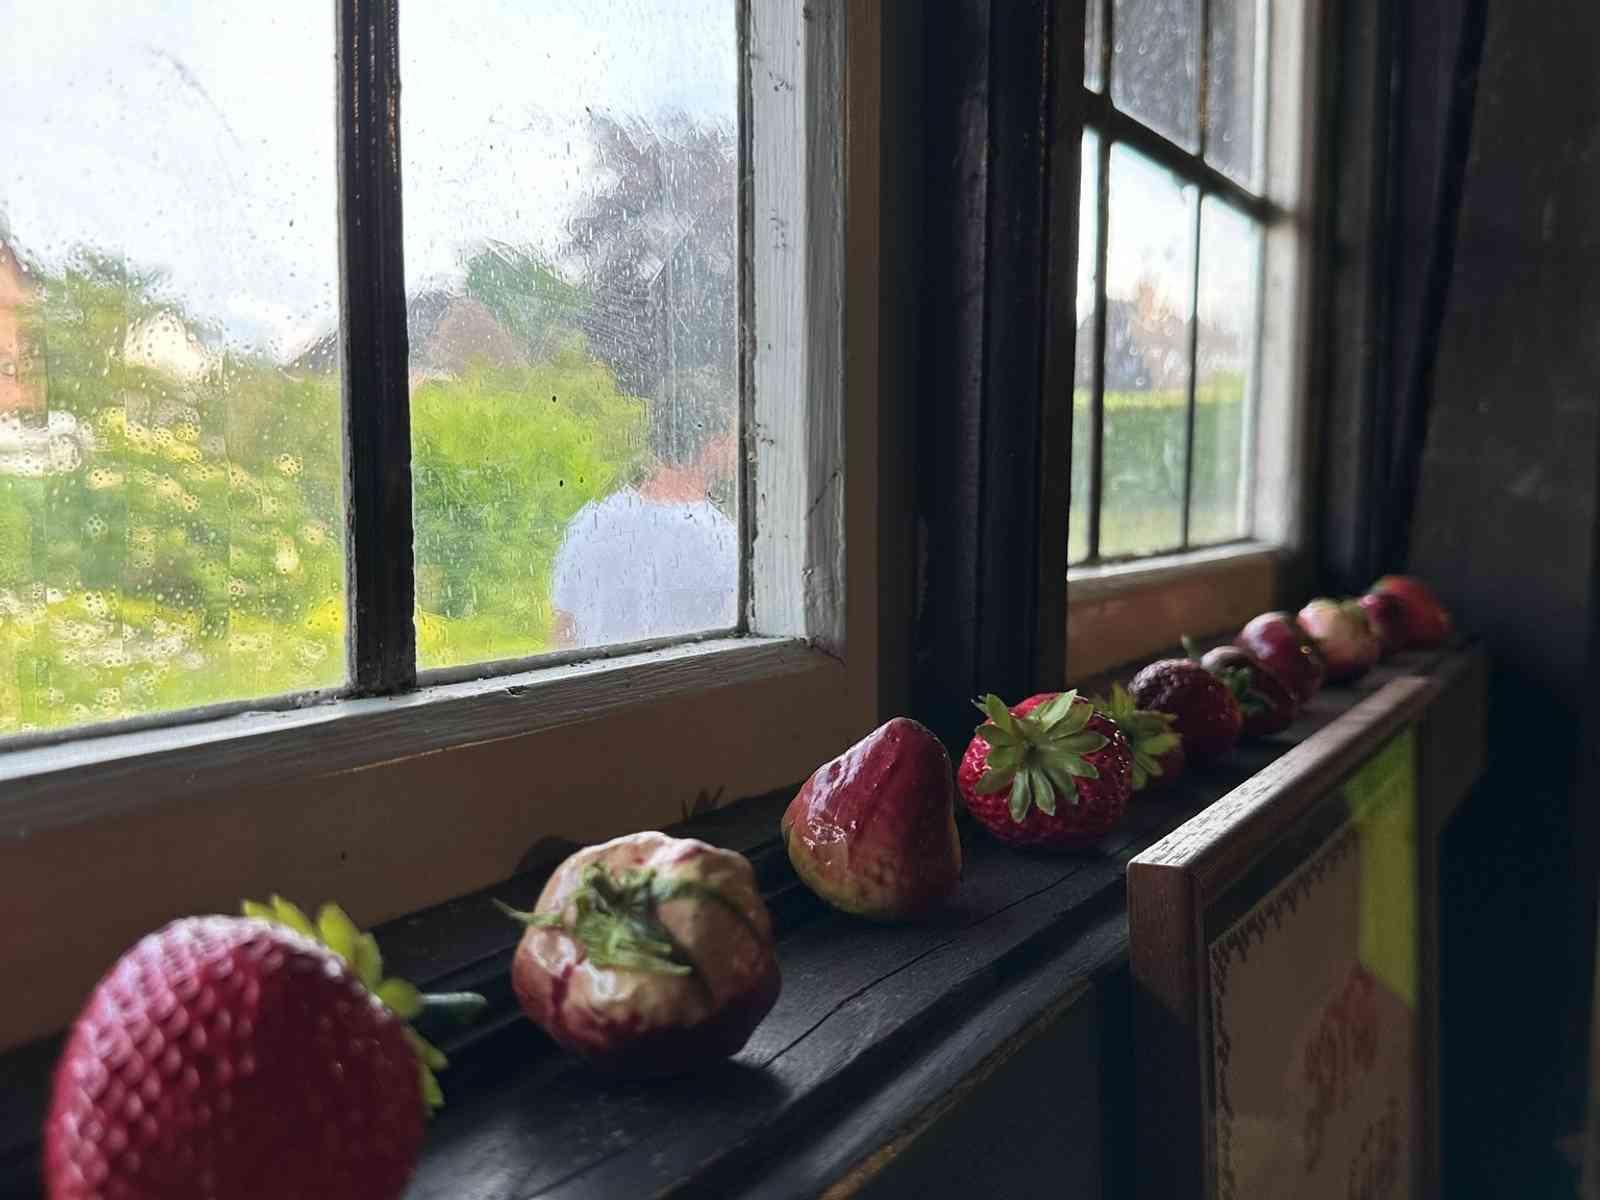 Erdbeeren auf einer Fensterbank aufgereiht.